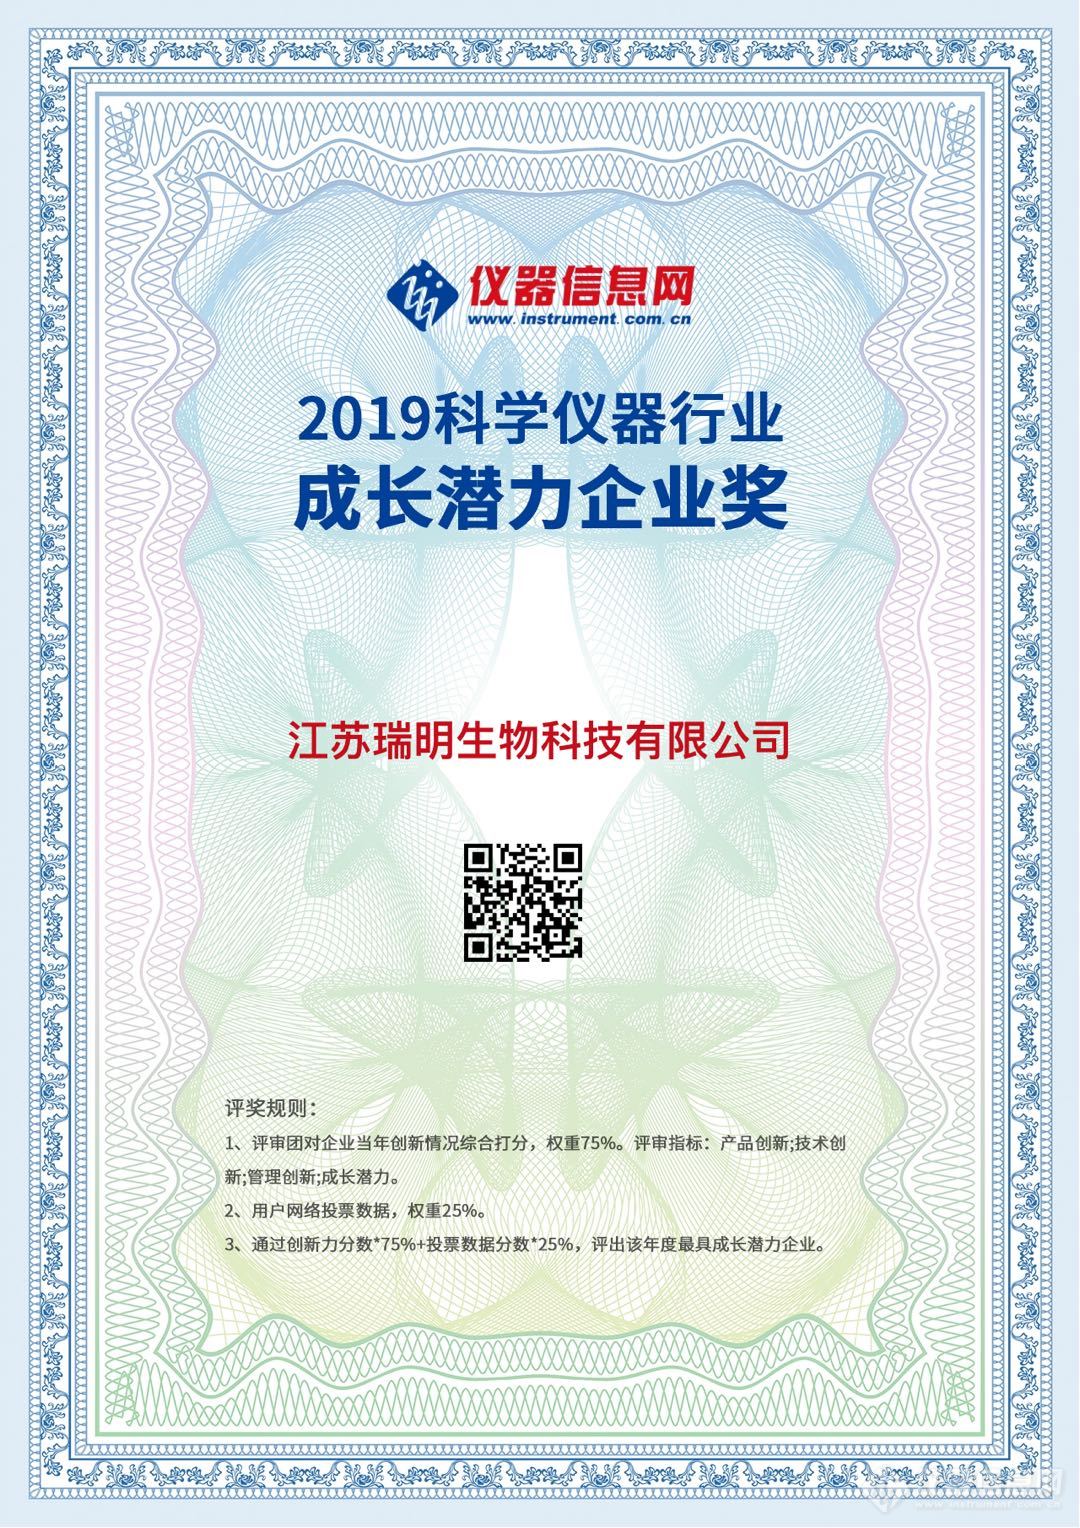 仪器信息网 2019成长潜力企业奖.jpg